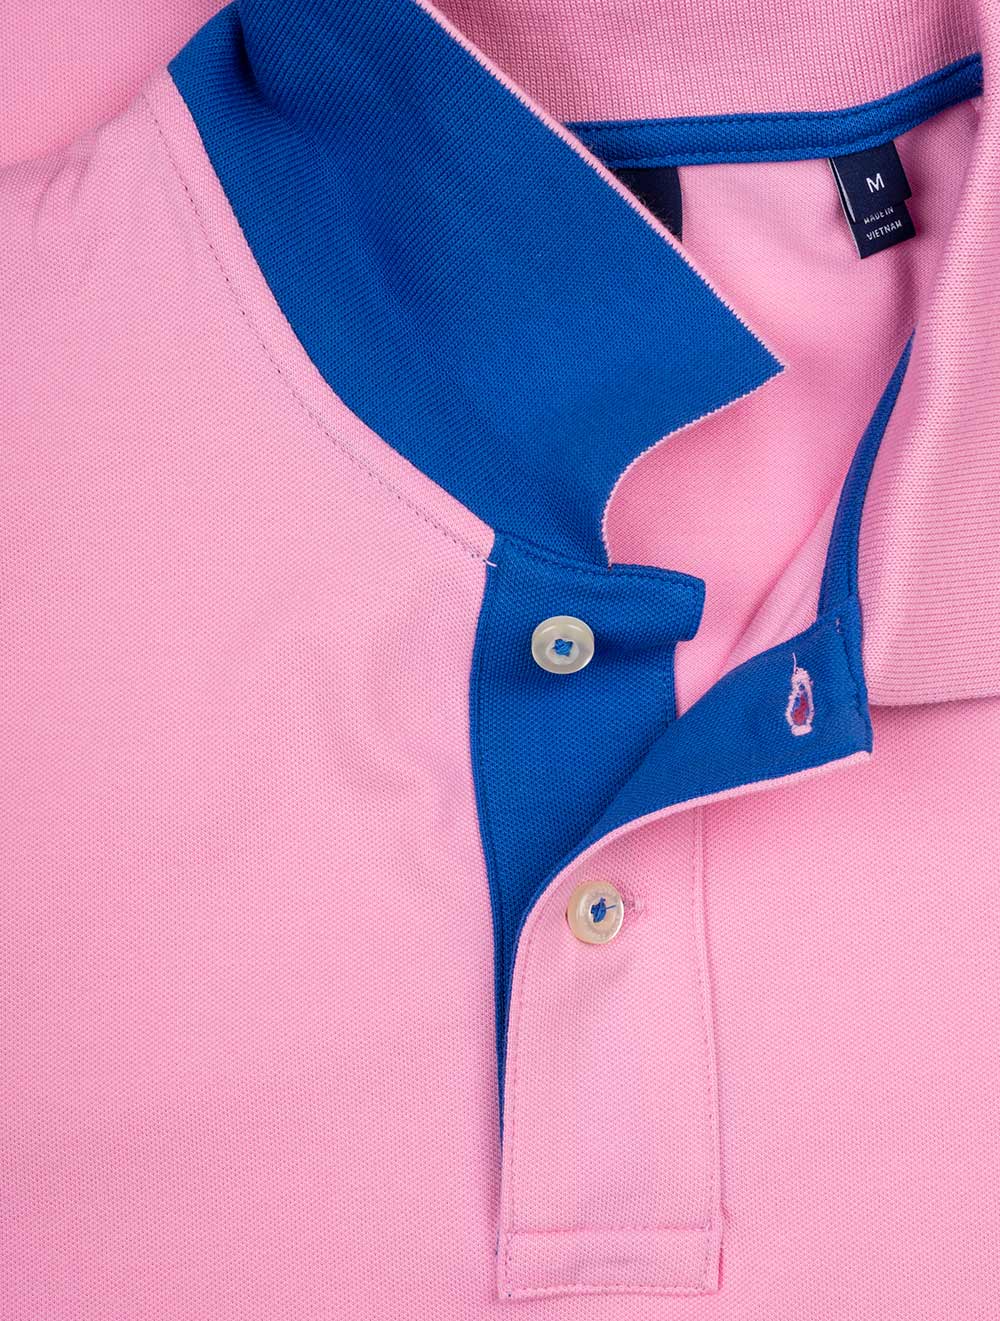 Contrast Collar Piqué Polo Shirt Bright Pink